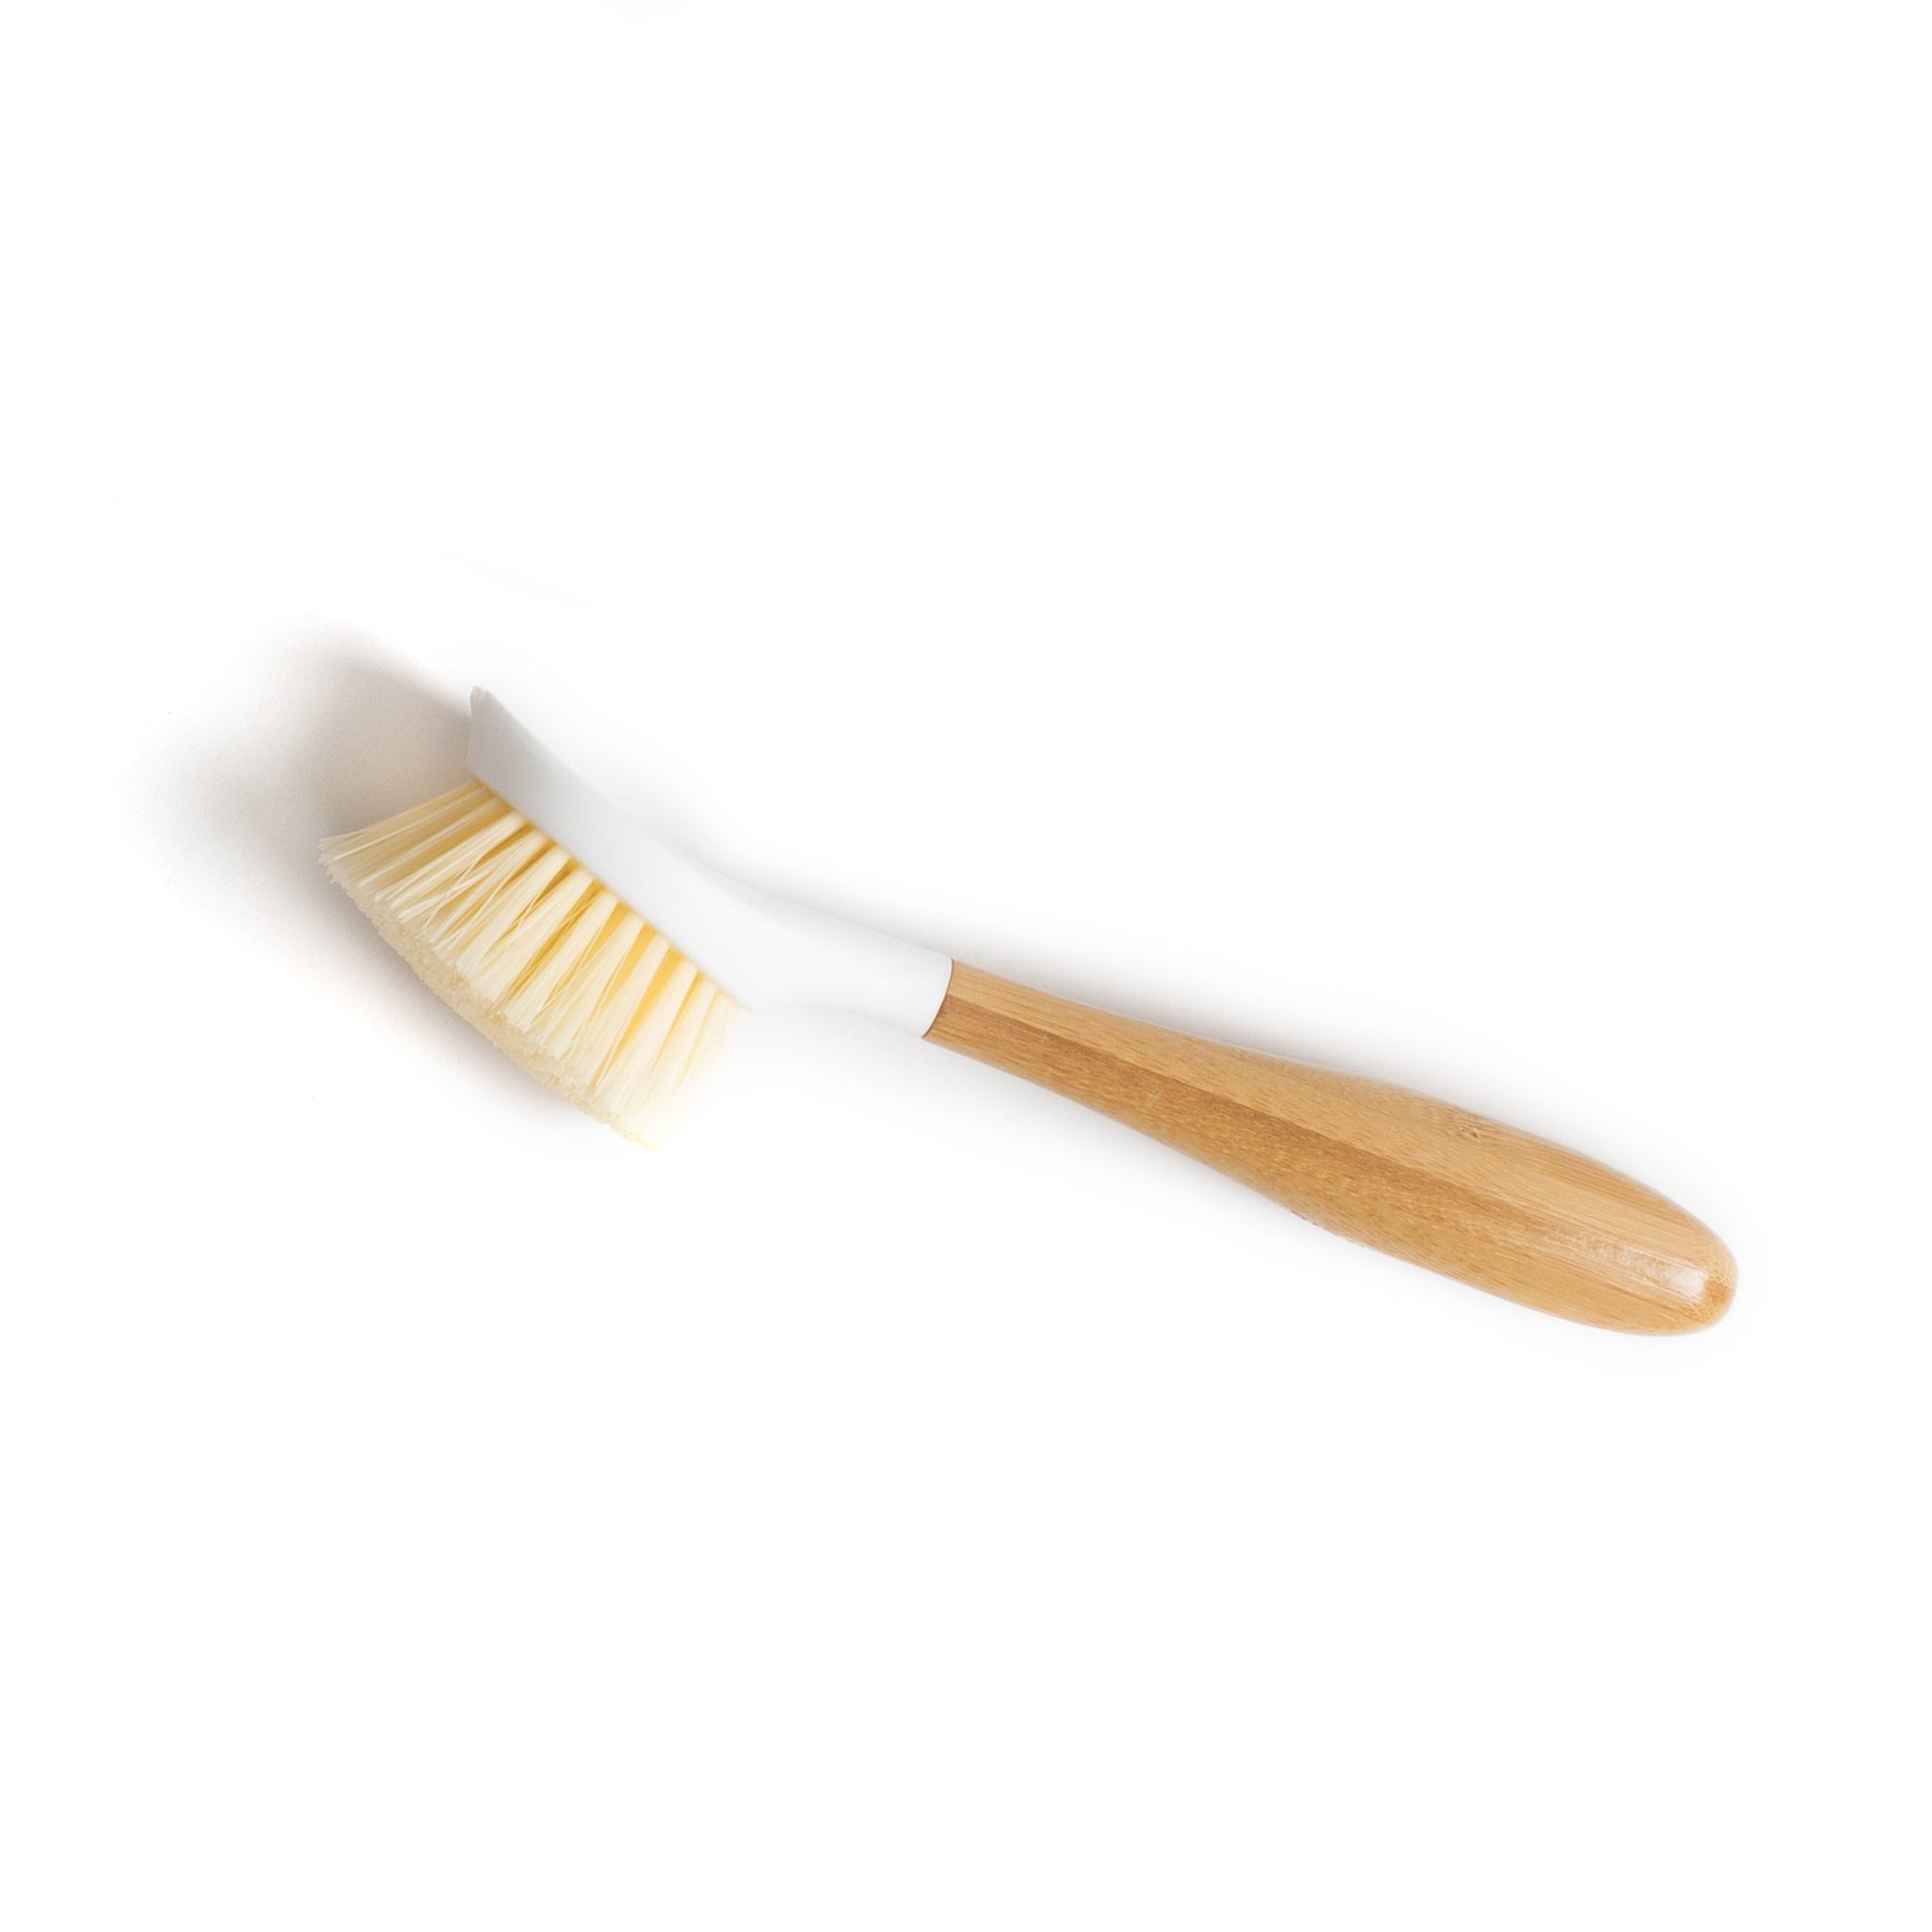 Dish Scrub Brush - Bamboo – Circular Bodies